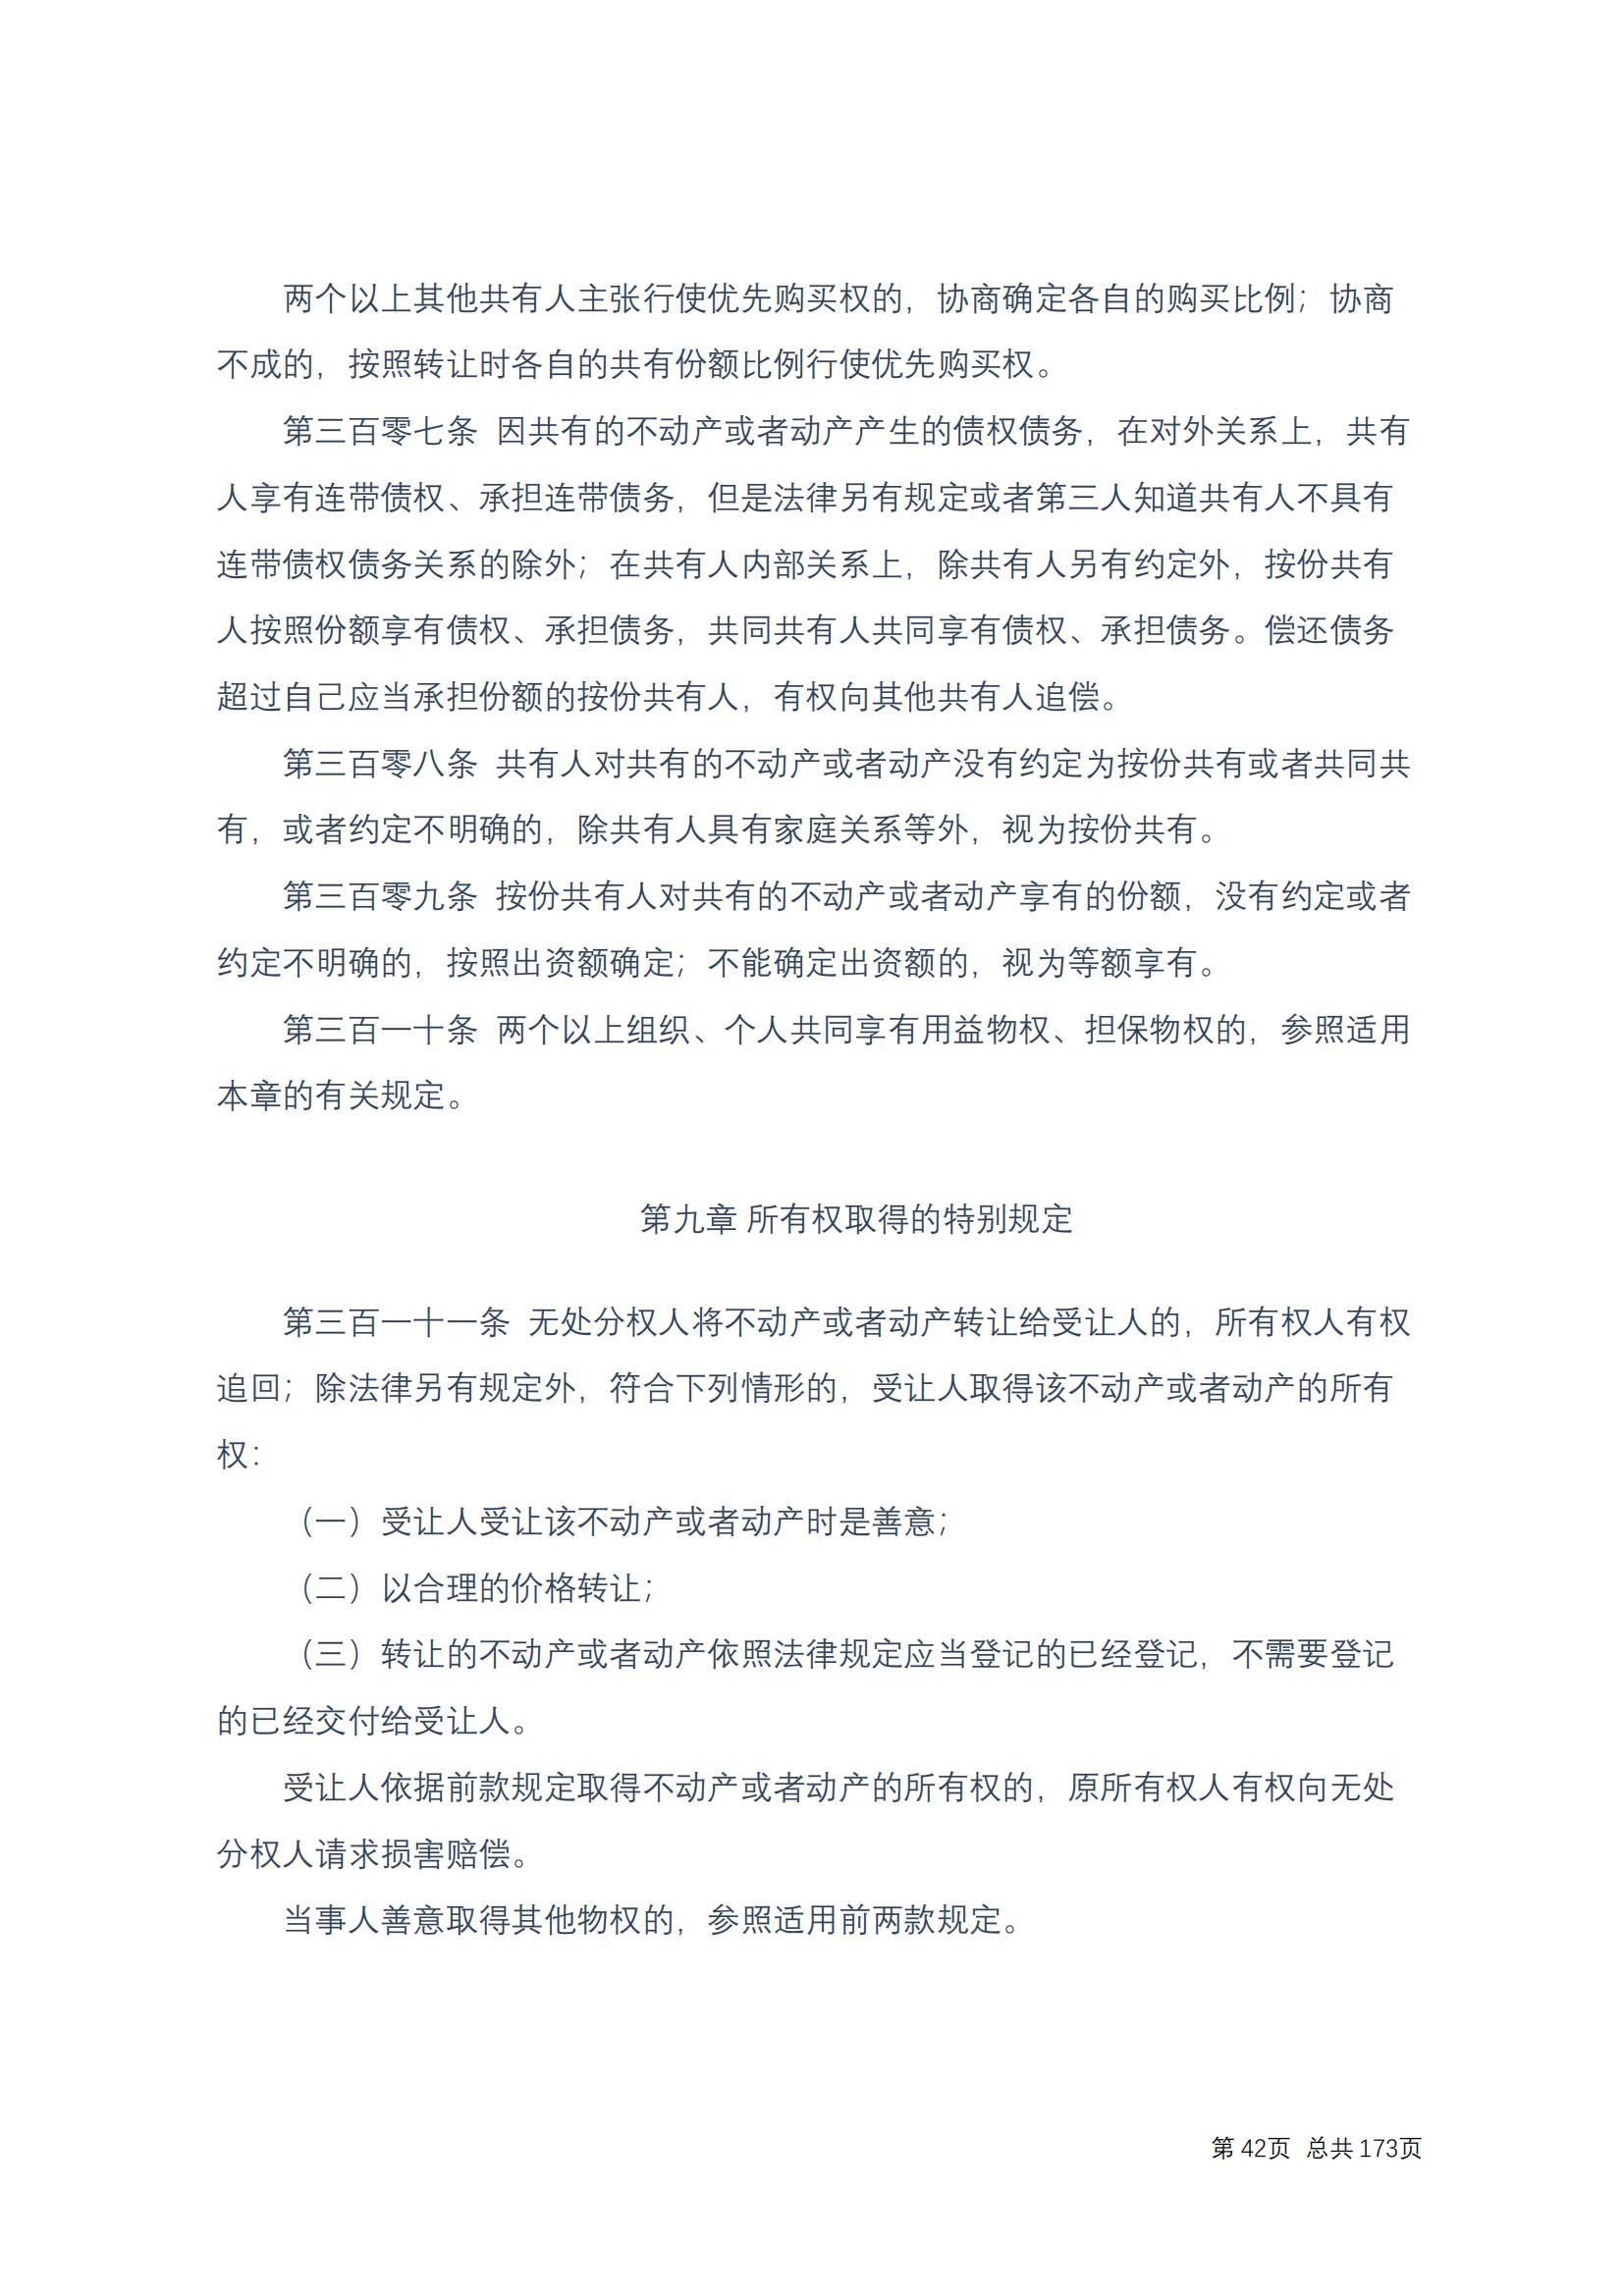 中华人民共和国民法典 修改过_41